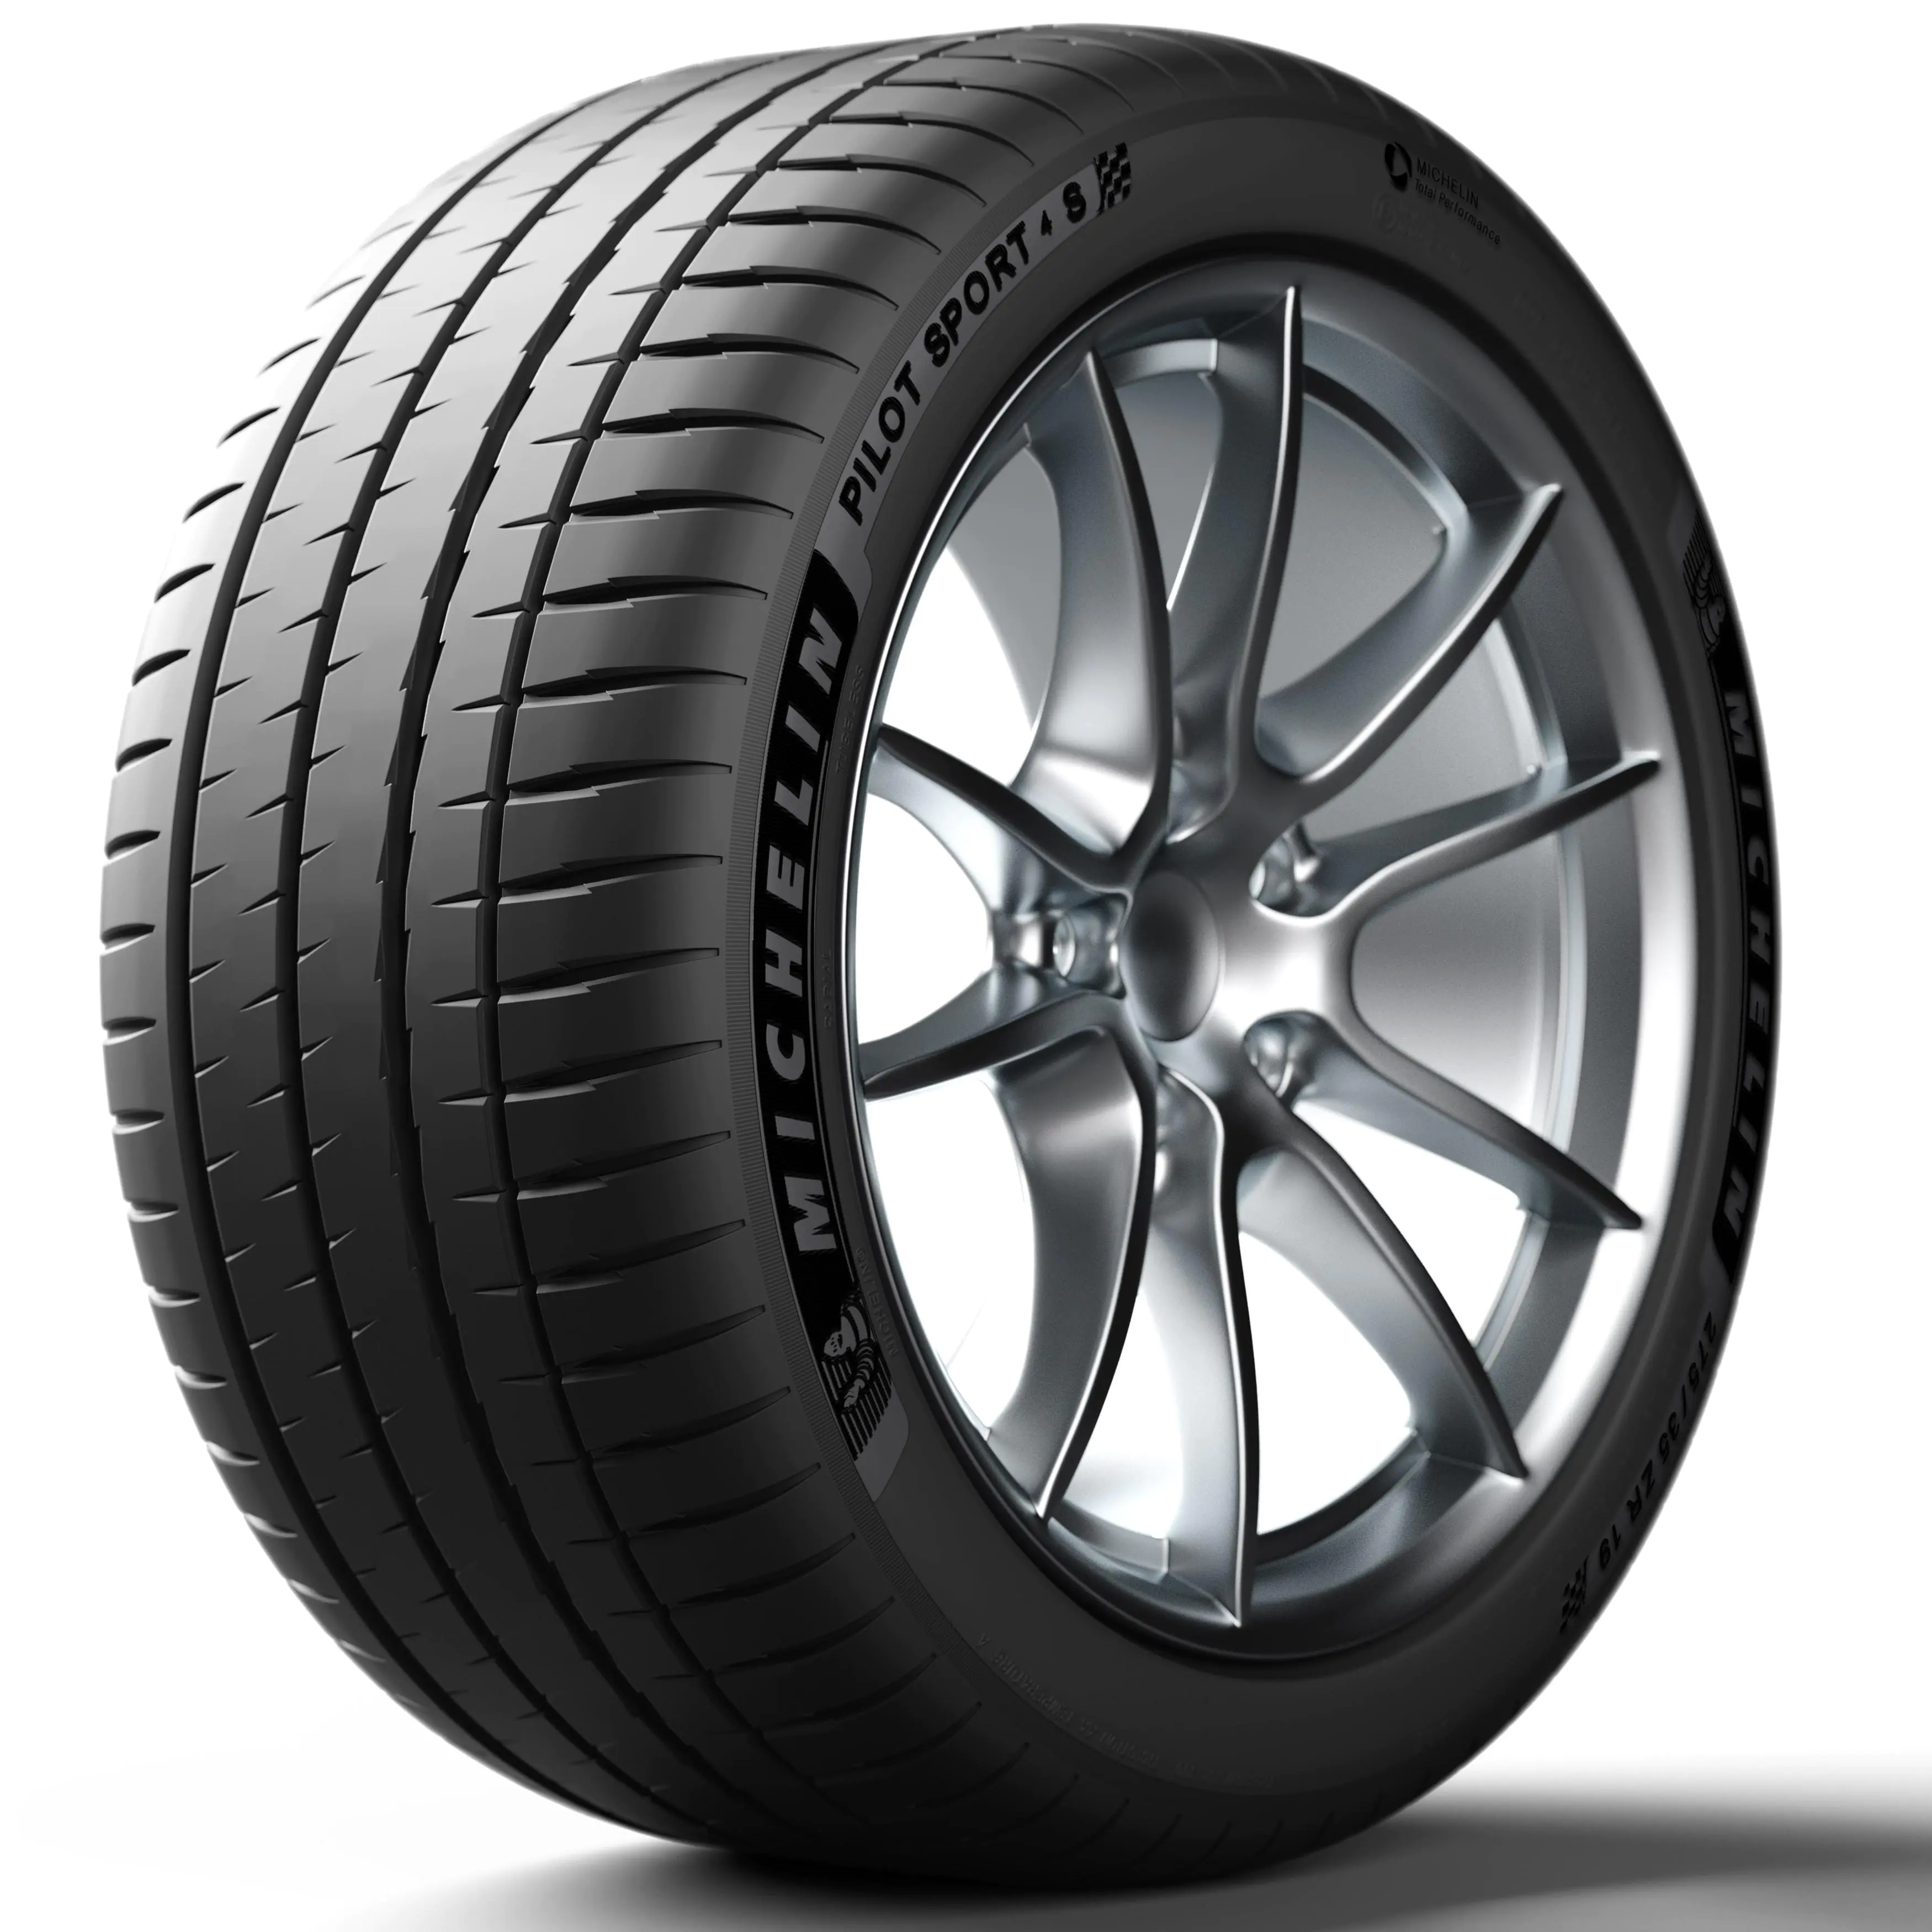 Michelin Michelin 255/40 R19 100Y Pilotsport4s XL pneumatici nuovi Estivo 